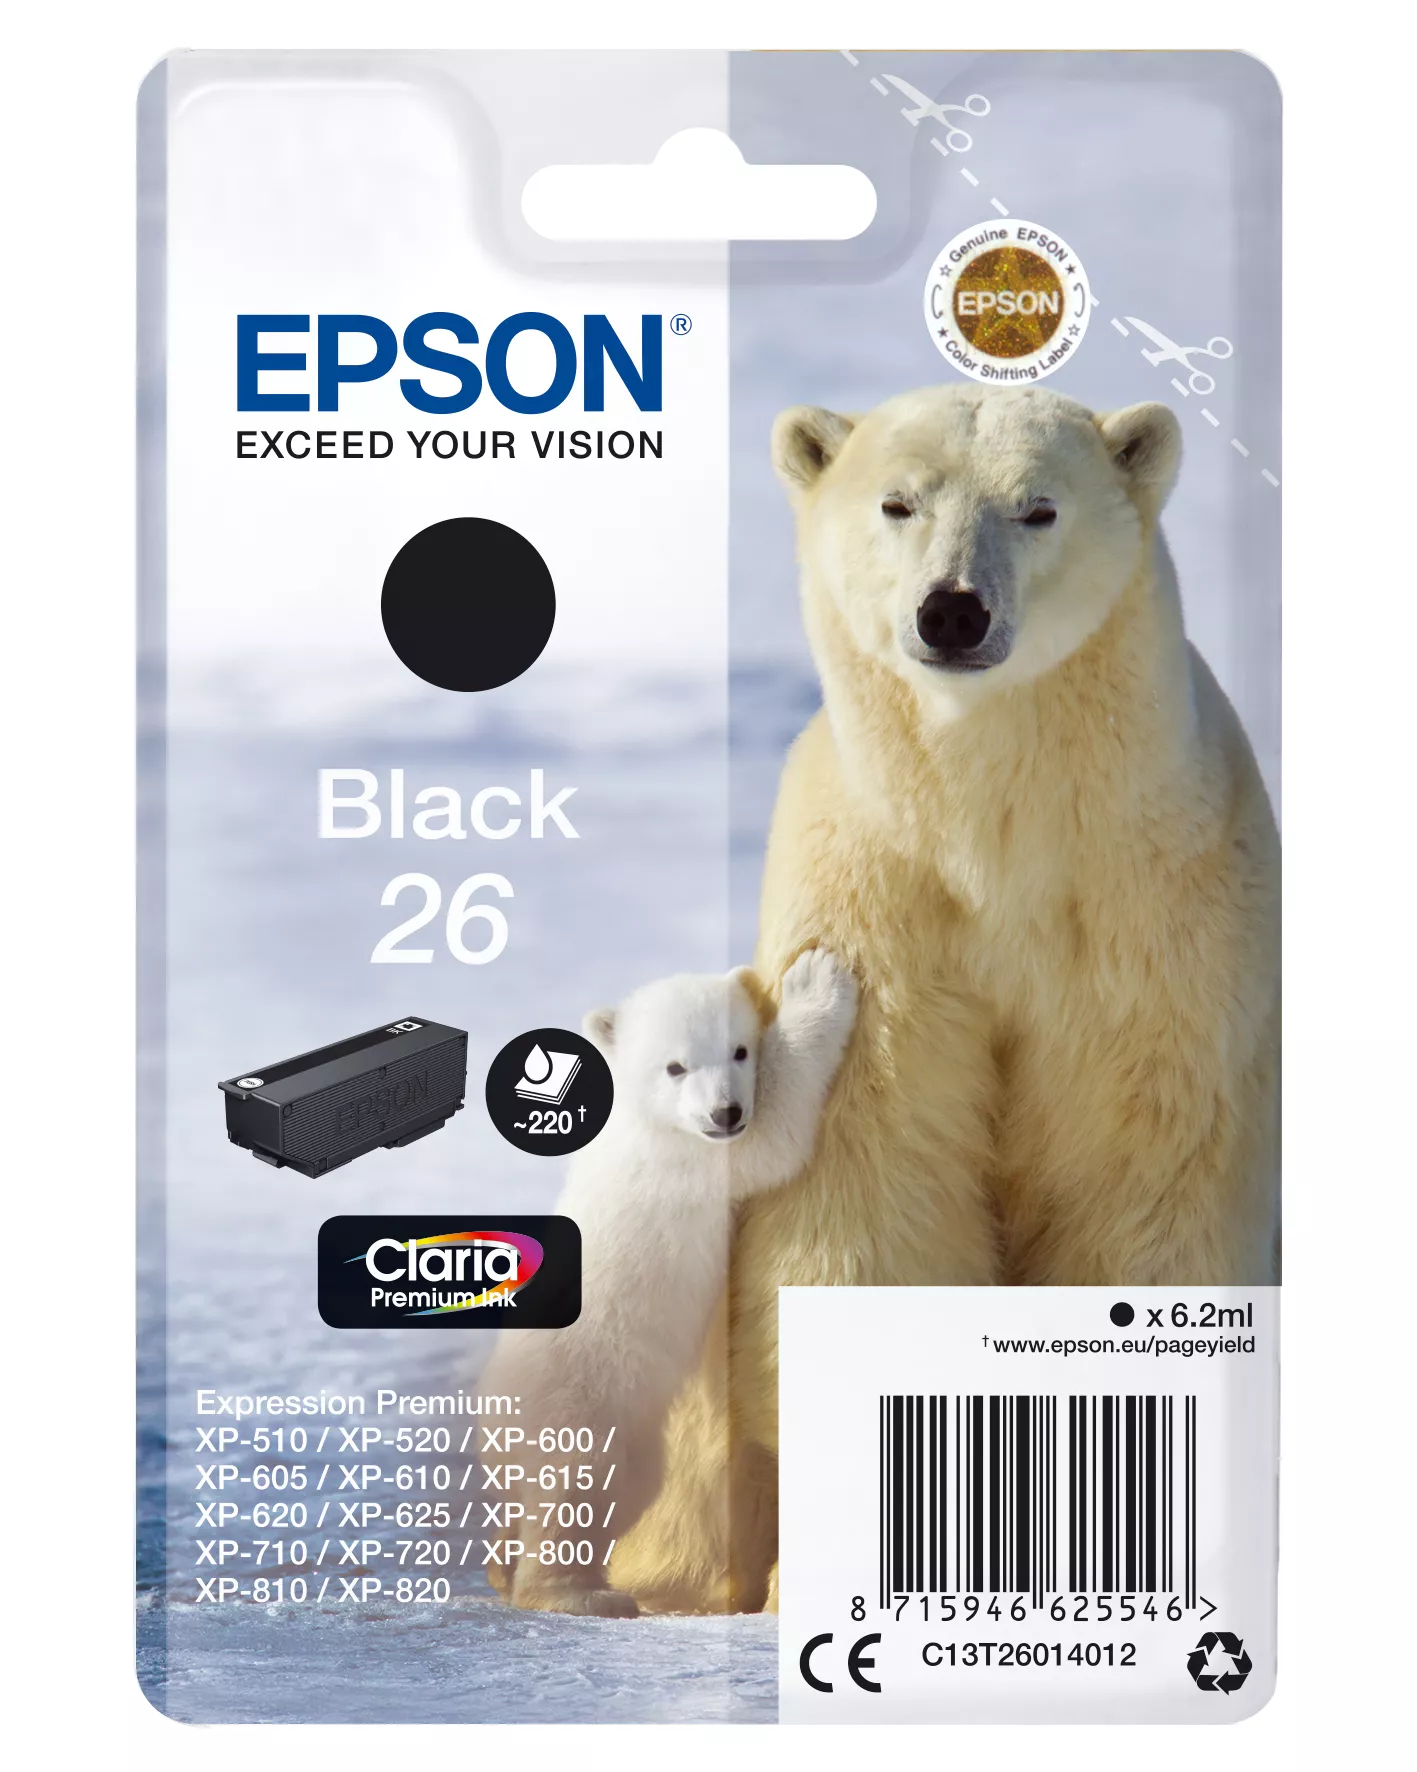 Achat EPSON 26 cartouche encre noir capacité standard 6.2ml 220 sur hello RSE